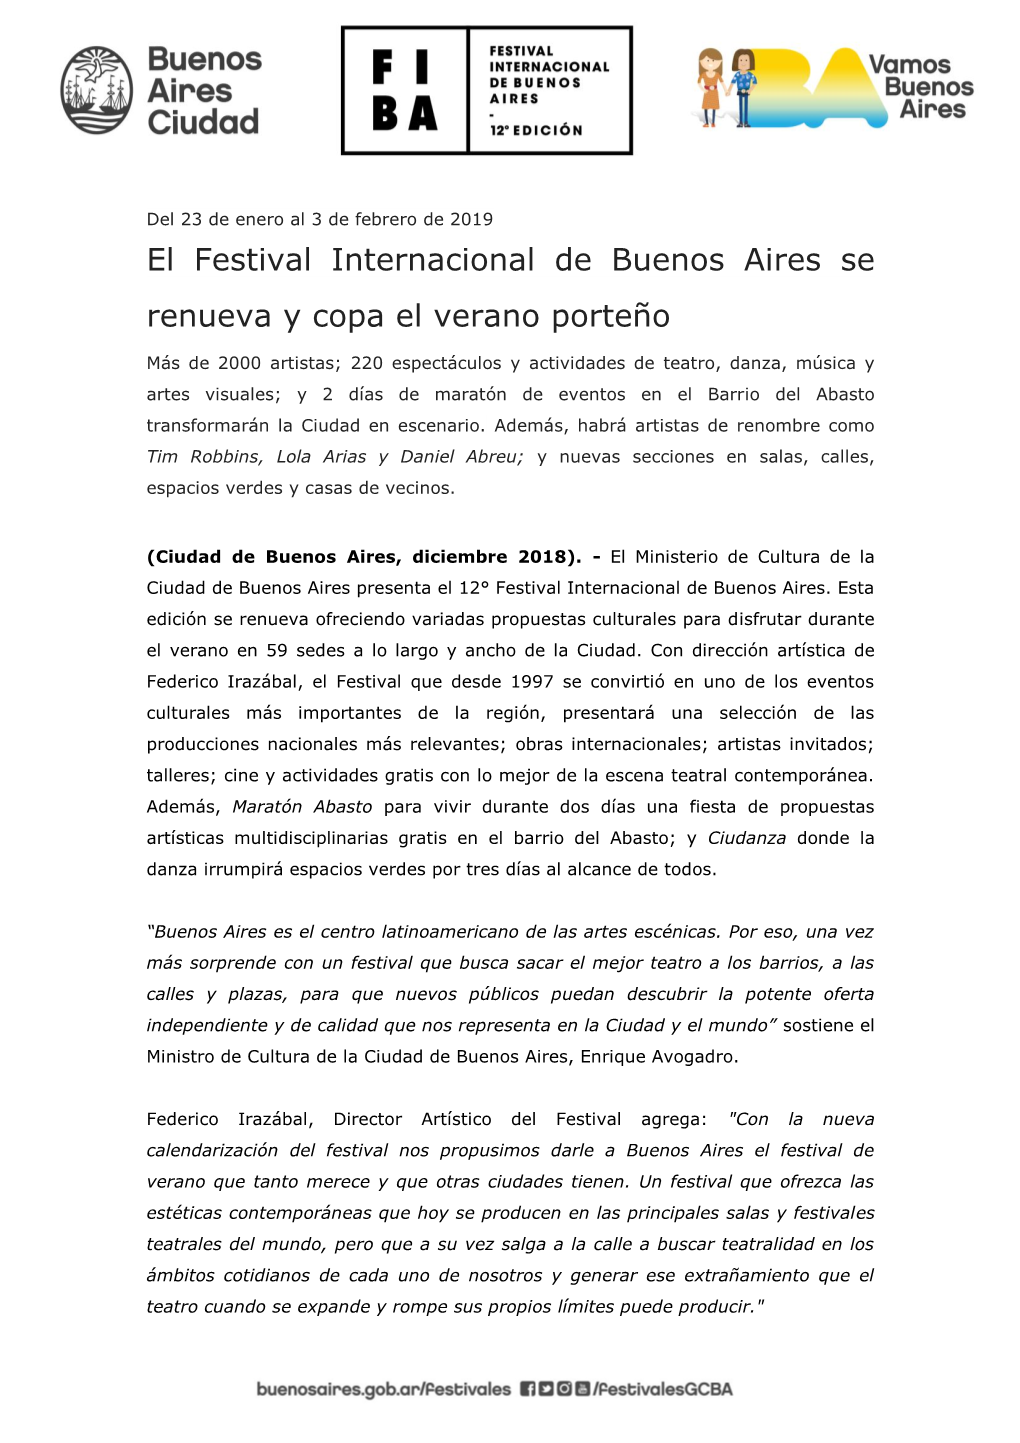 El Festival Internacional De Buenos Aires Se Renueva Y Copa El Verano Porteño